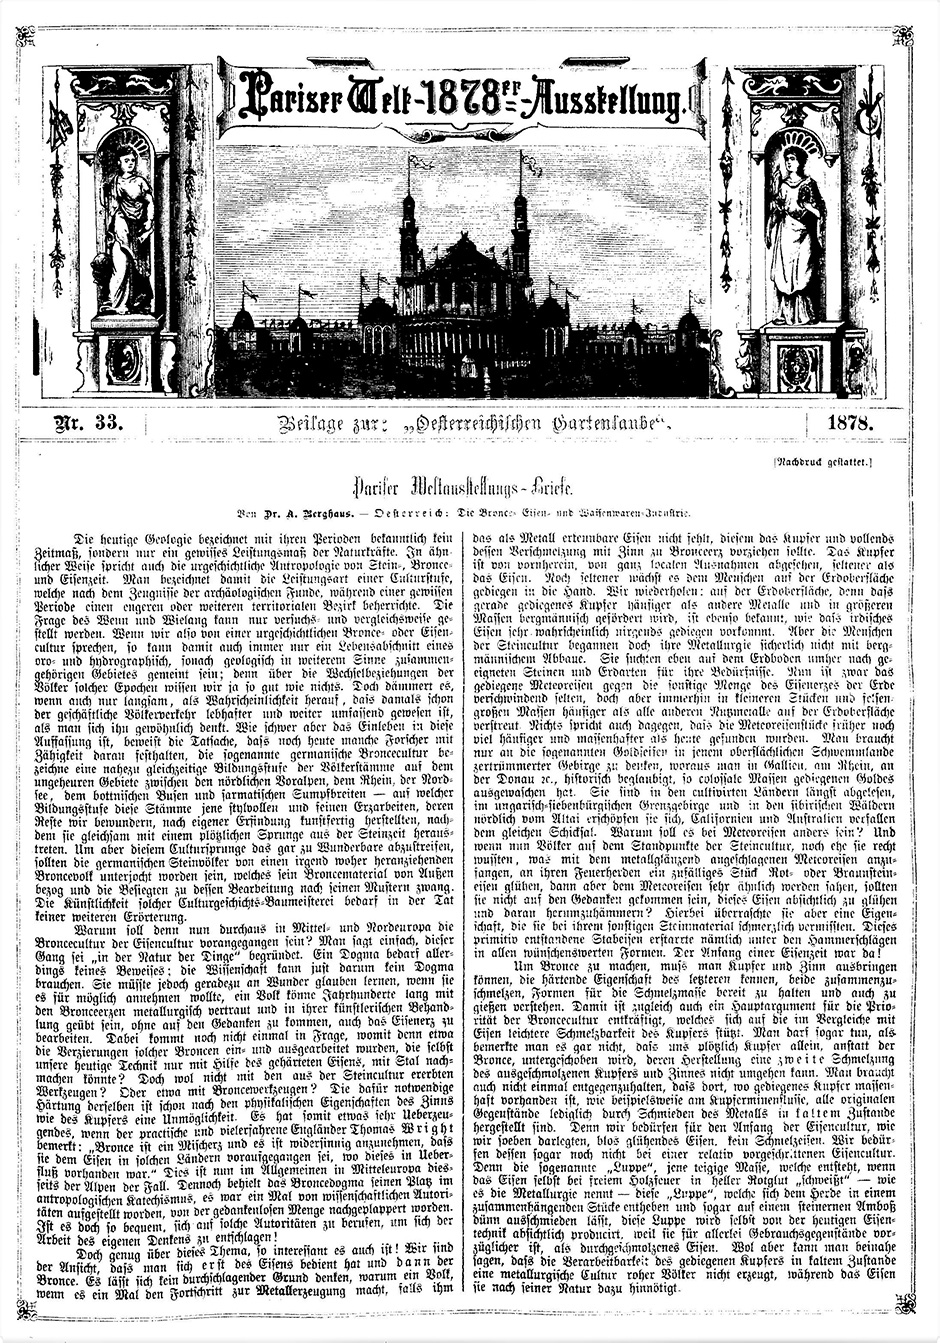 Archivbild 1: Beilage zur: "Österreichischen Gartenlaube" vom 19.9.1878